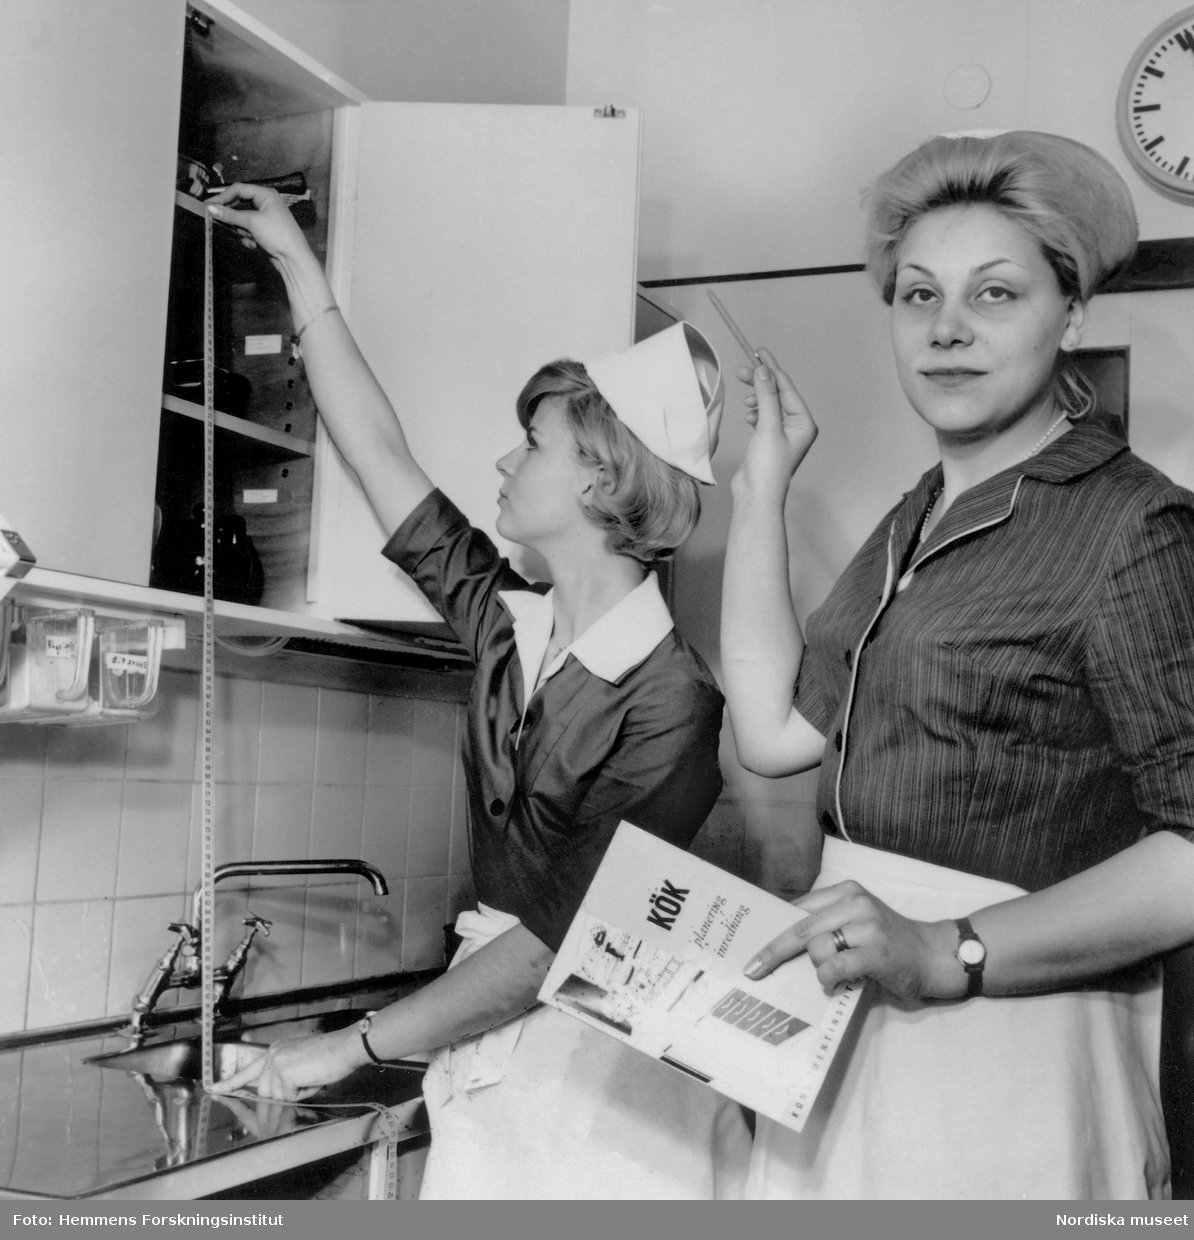 Två kvinnor mäter i ett kök. ”Kritiken mot 30-talets små kök var stark. Det blev inte som arkitekterna trott - att framtidens kök mest skulle användas för att värma färdiga konserver. På 40-talet försökte man ta reda på hur behoven verkligen såg ut. Hemmens forskningsinstitut som bildades 1944, koncentrerade sig främst på köket och utförde funktions- och utrymmesstudier i full skala. Med utgångspunkt i dessa studier fastställdes den första svenska köksstandarden 1950 som i stort sett är densamma som i dag.”